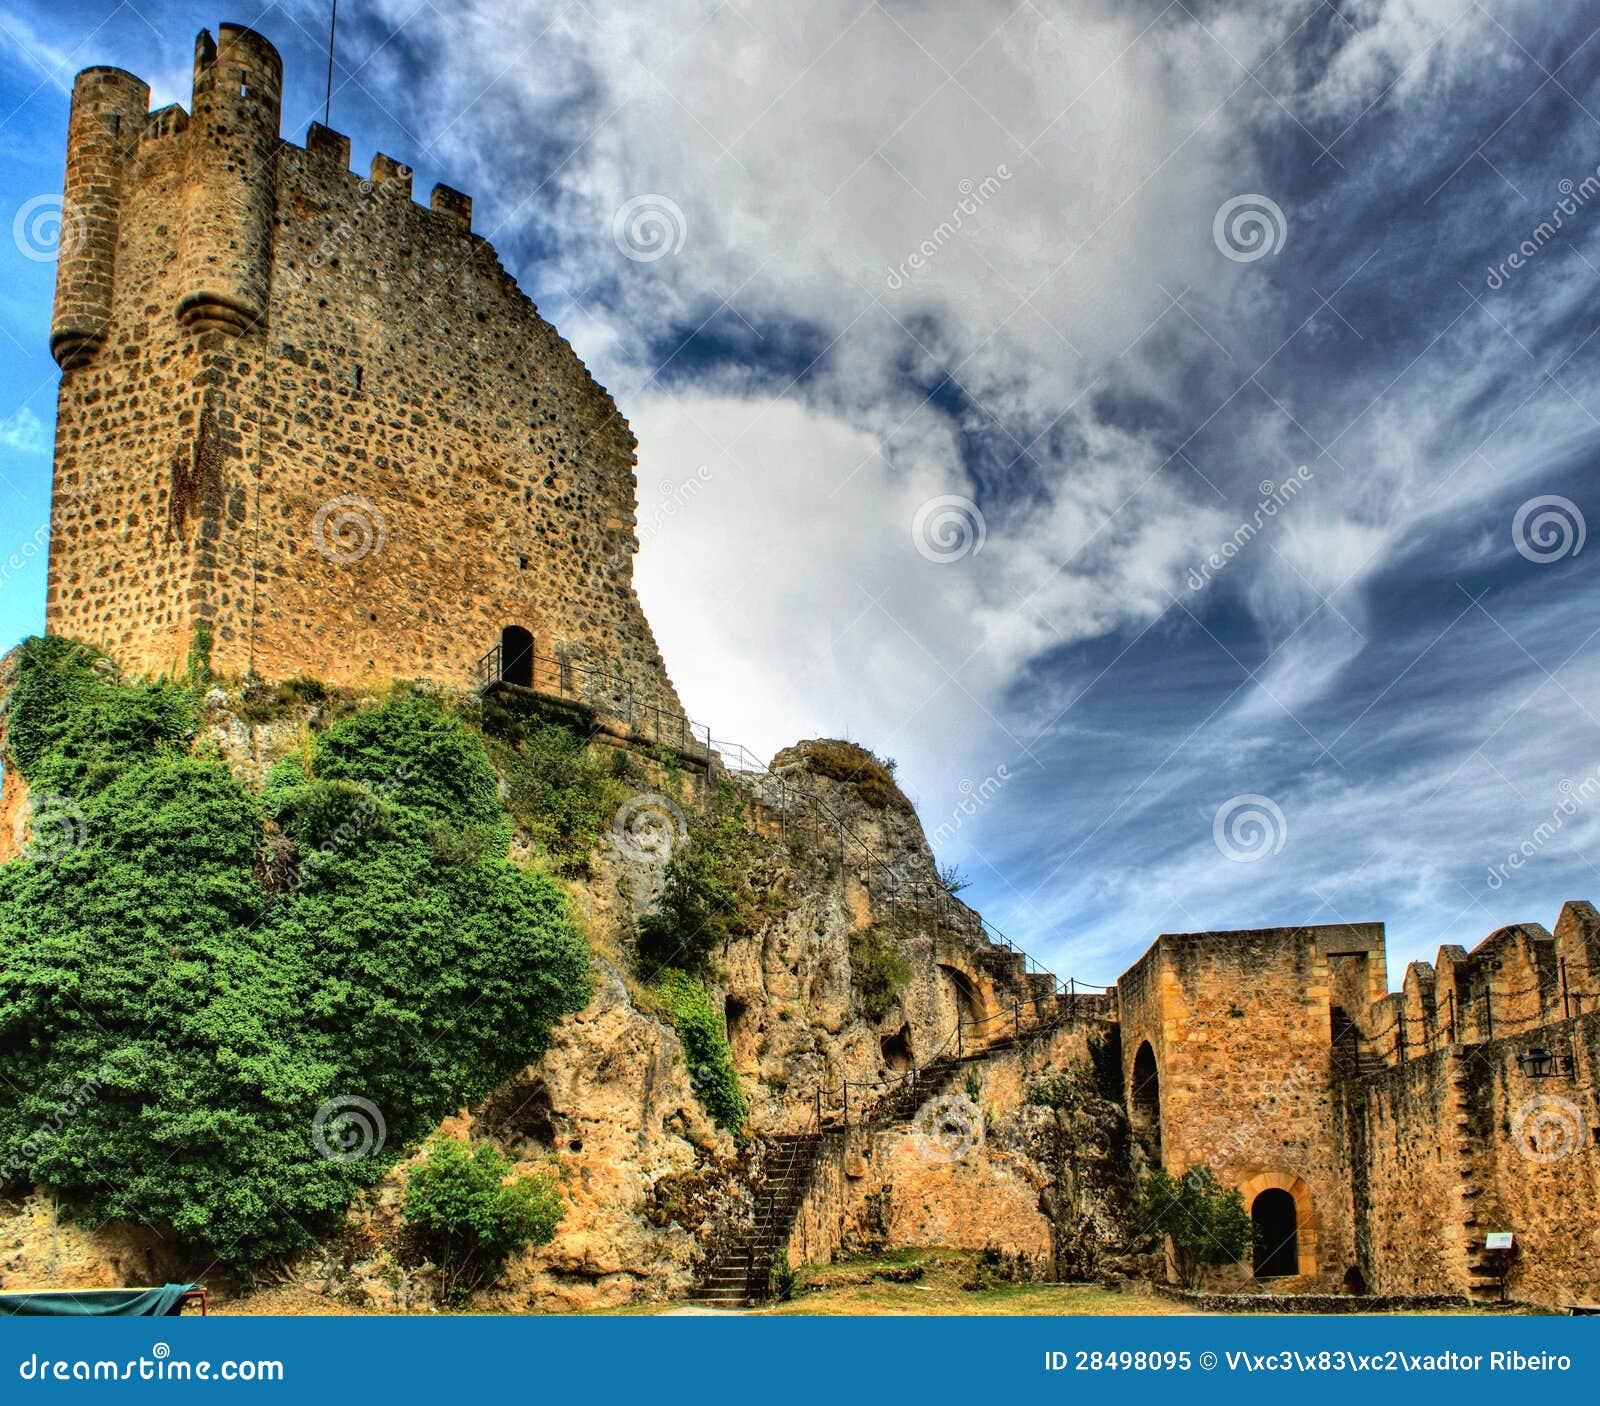 castle of frias